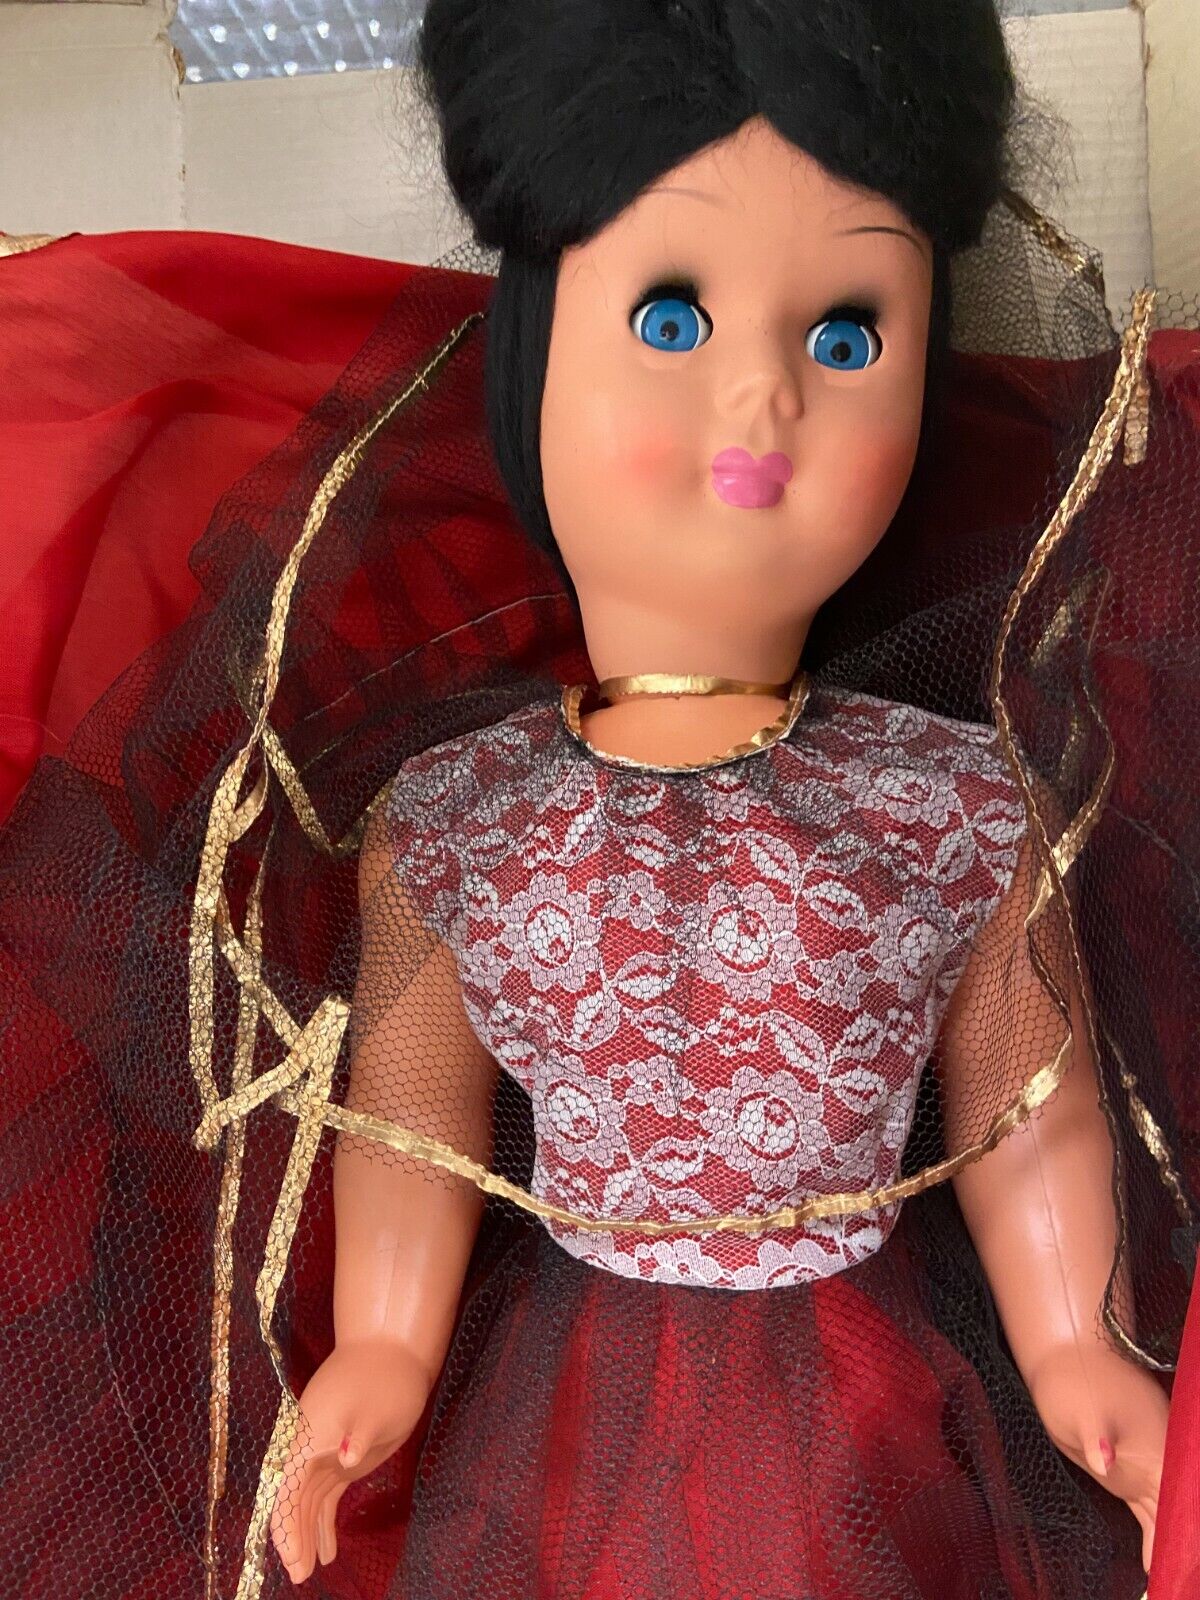 Antica bambola h 70 cm